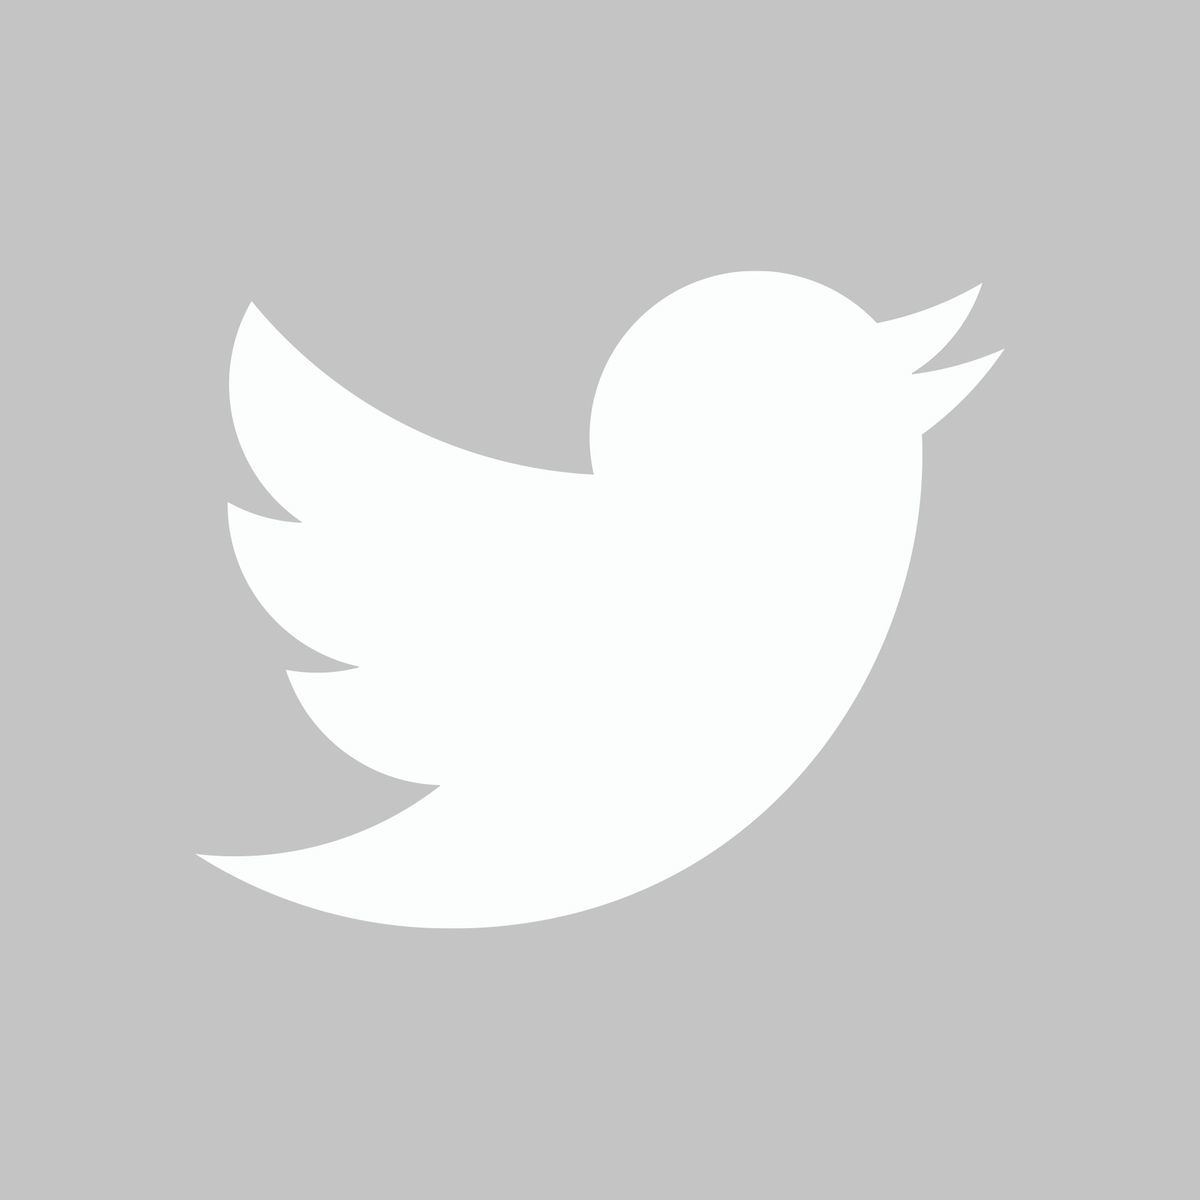 Twitterのロゴをダウンロードする方法 利用規約も日本語訳で解説 マイナビニュース